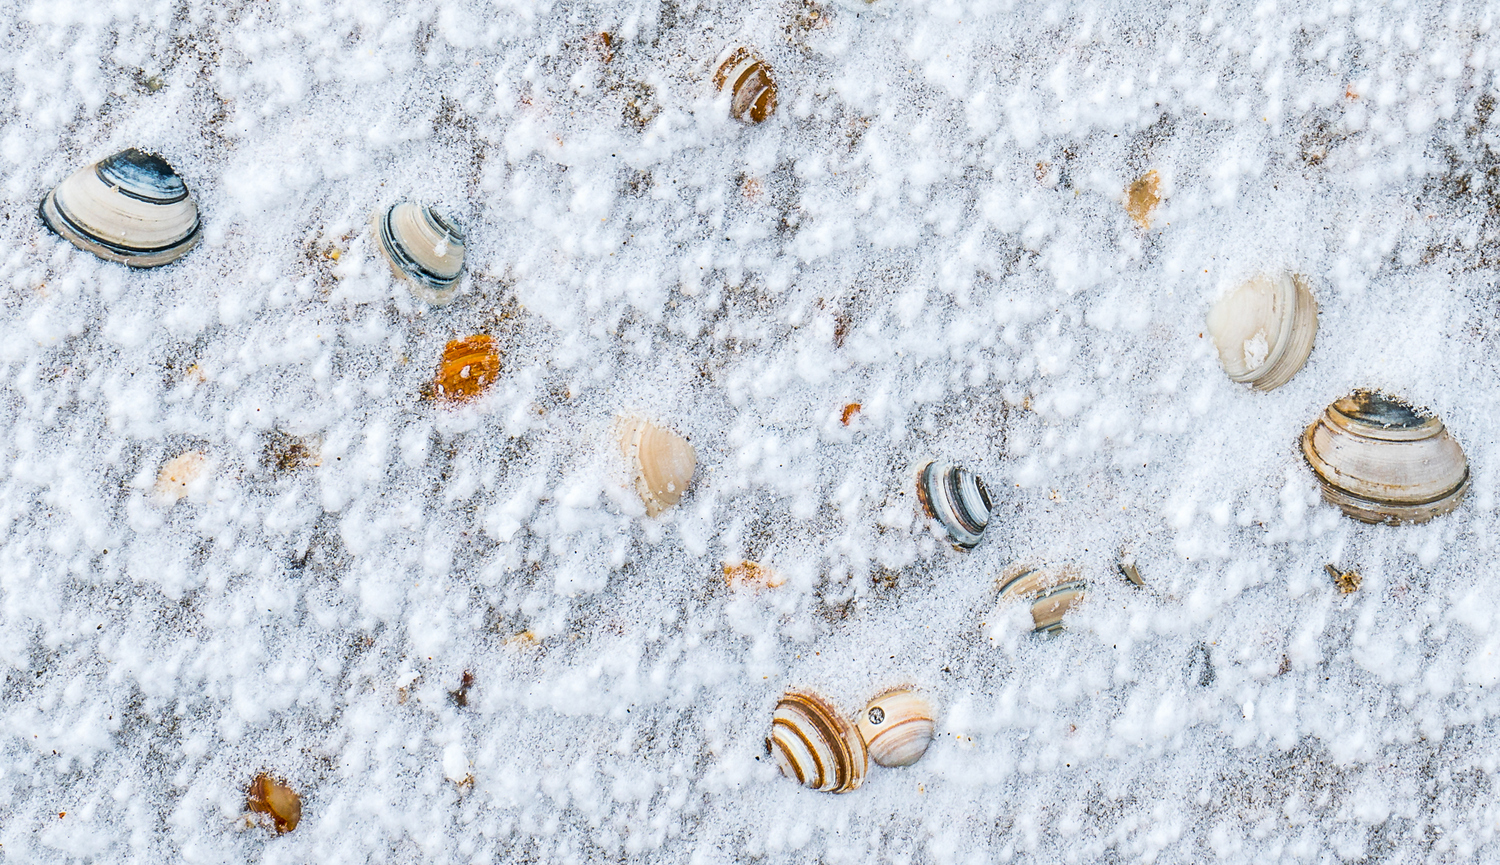 Schelpjes in de sneeuw, Deel de Natuur, Loes Belovics